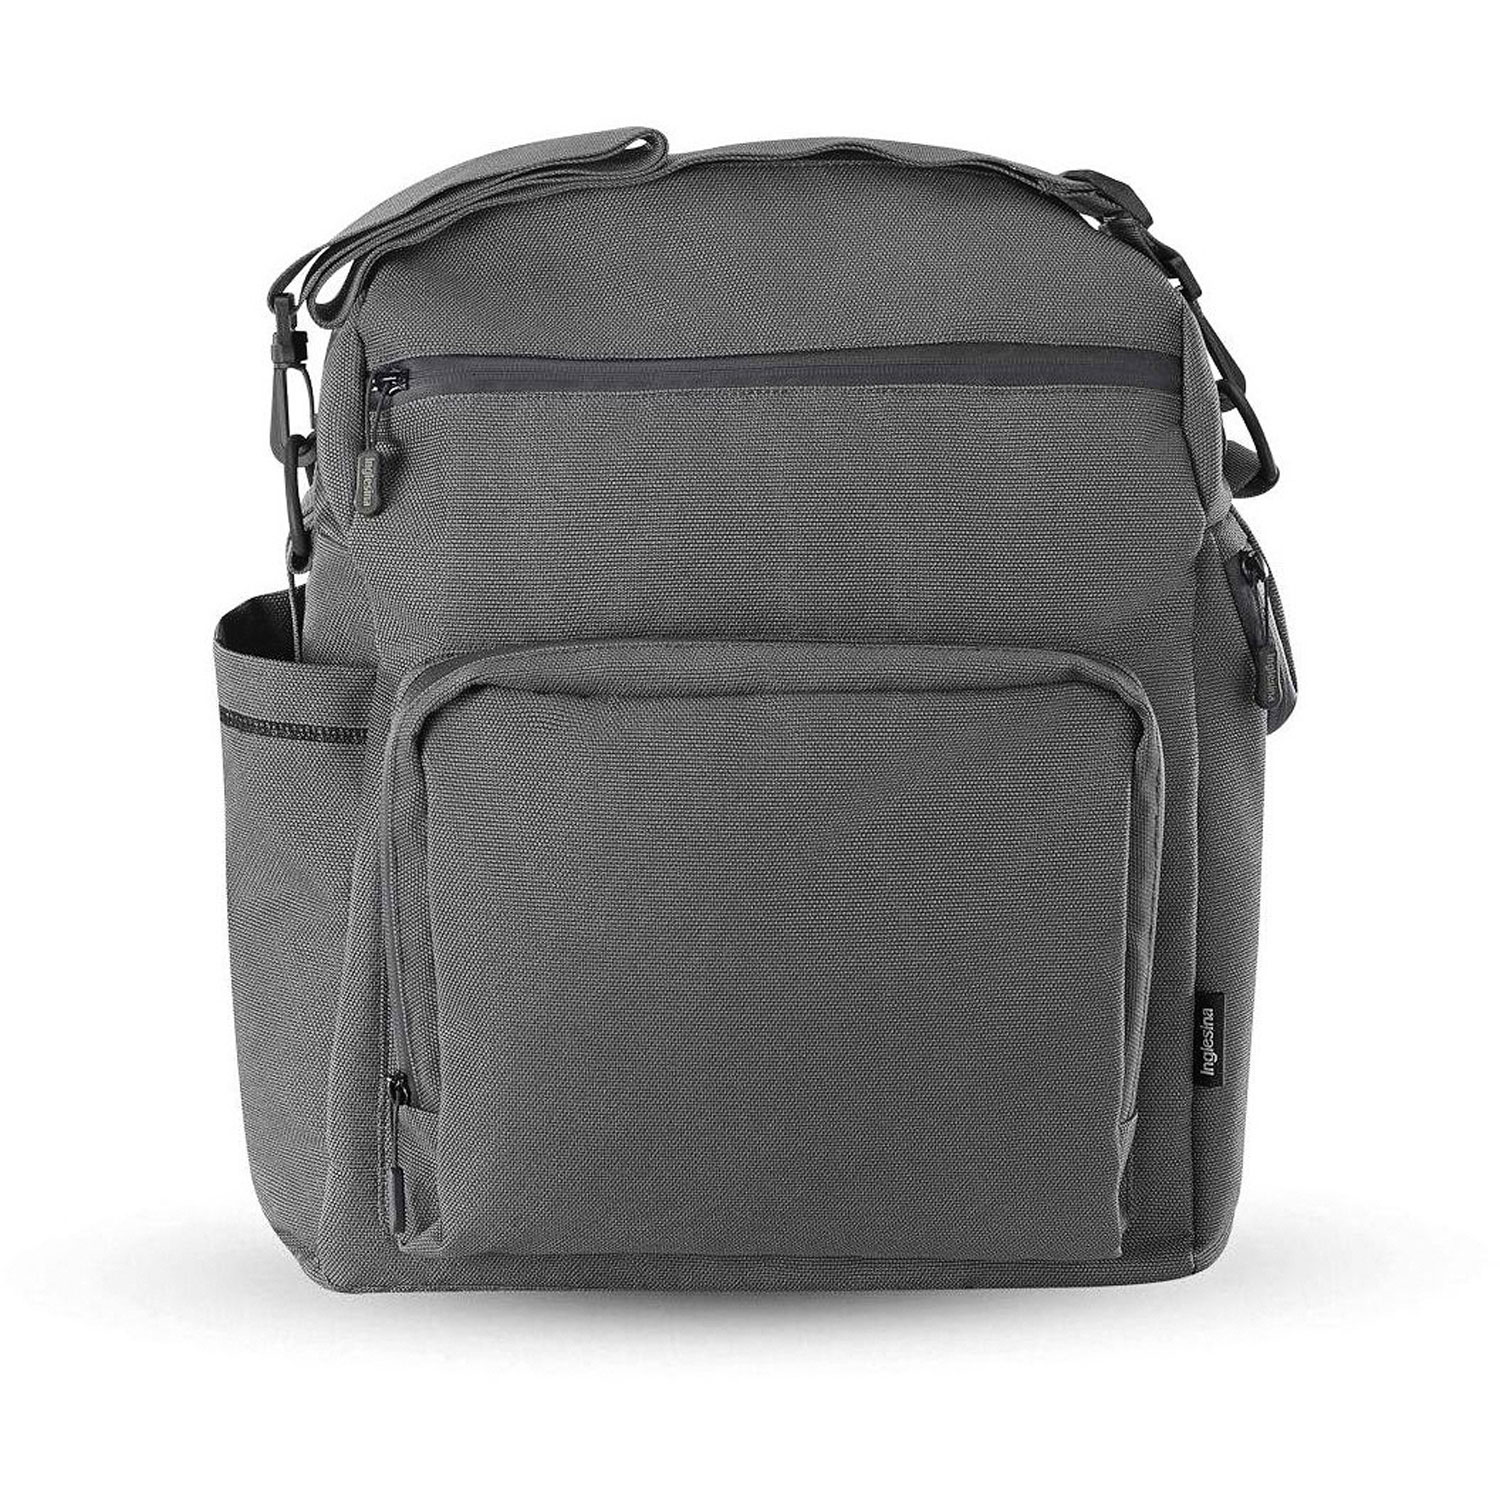 Сумка-рюкзак для коляски ADVENTURE BAG, цвет CHARCOAL GREY (2021) Inglesina сумка рюкзак для коляски adventure bag charcoal grey 2021 inglesina